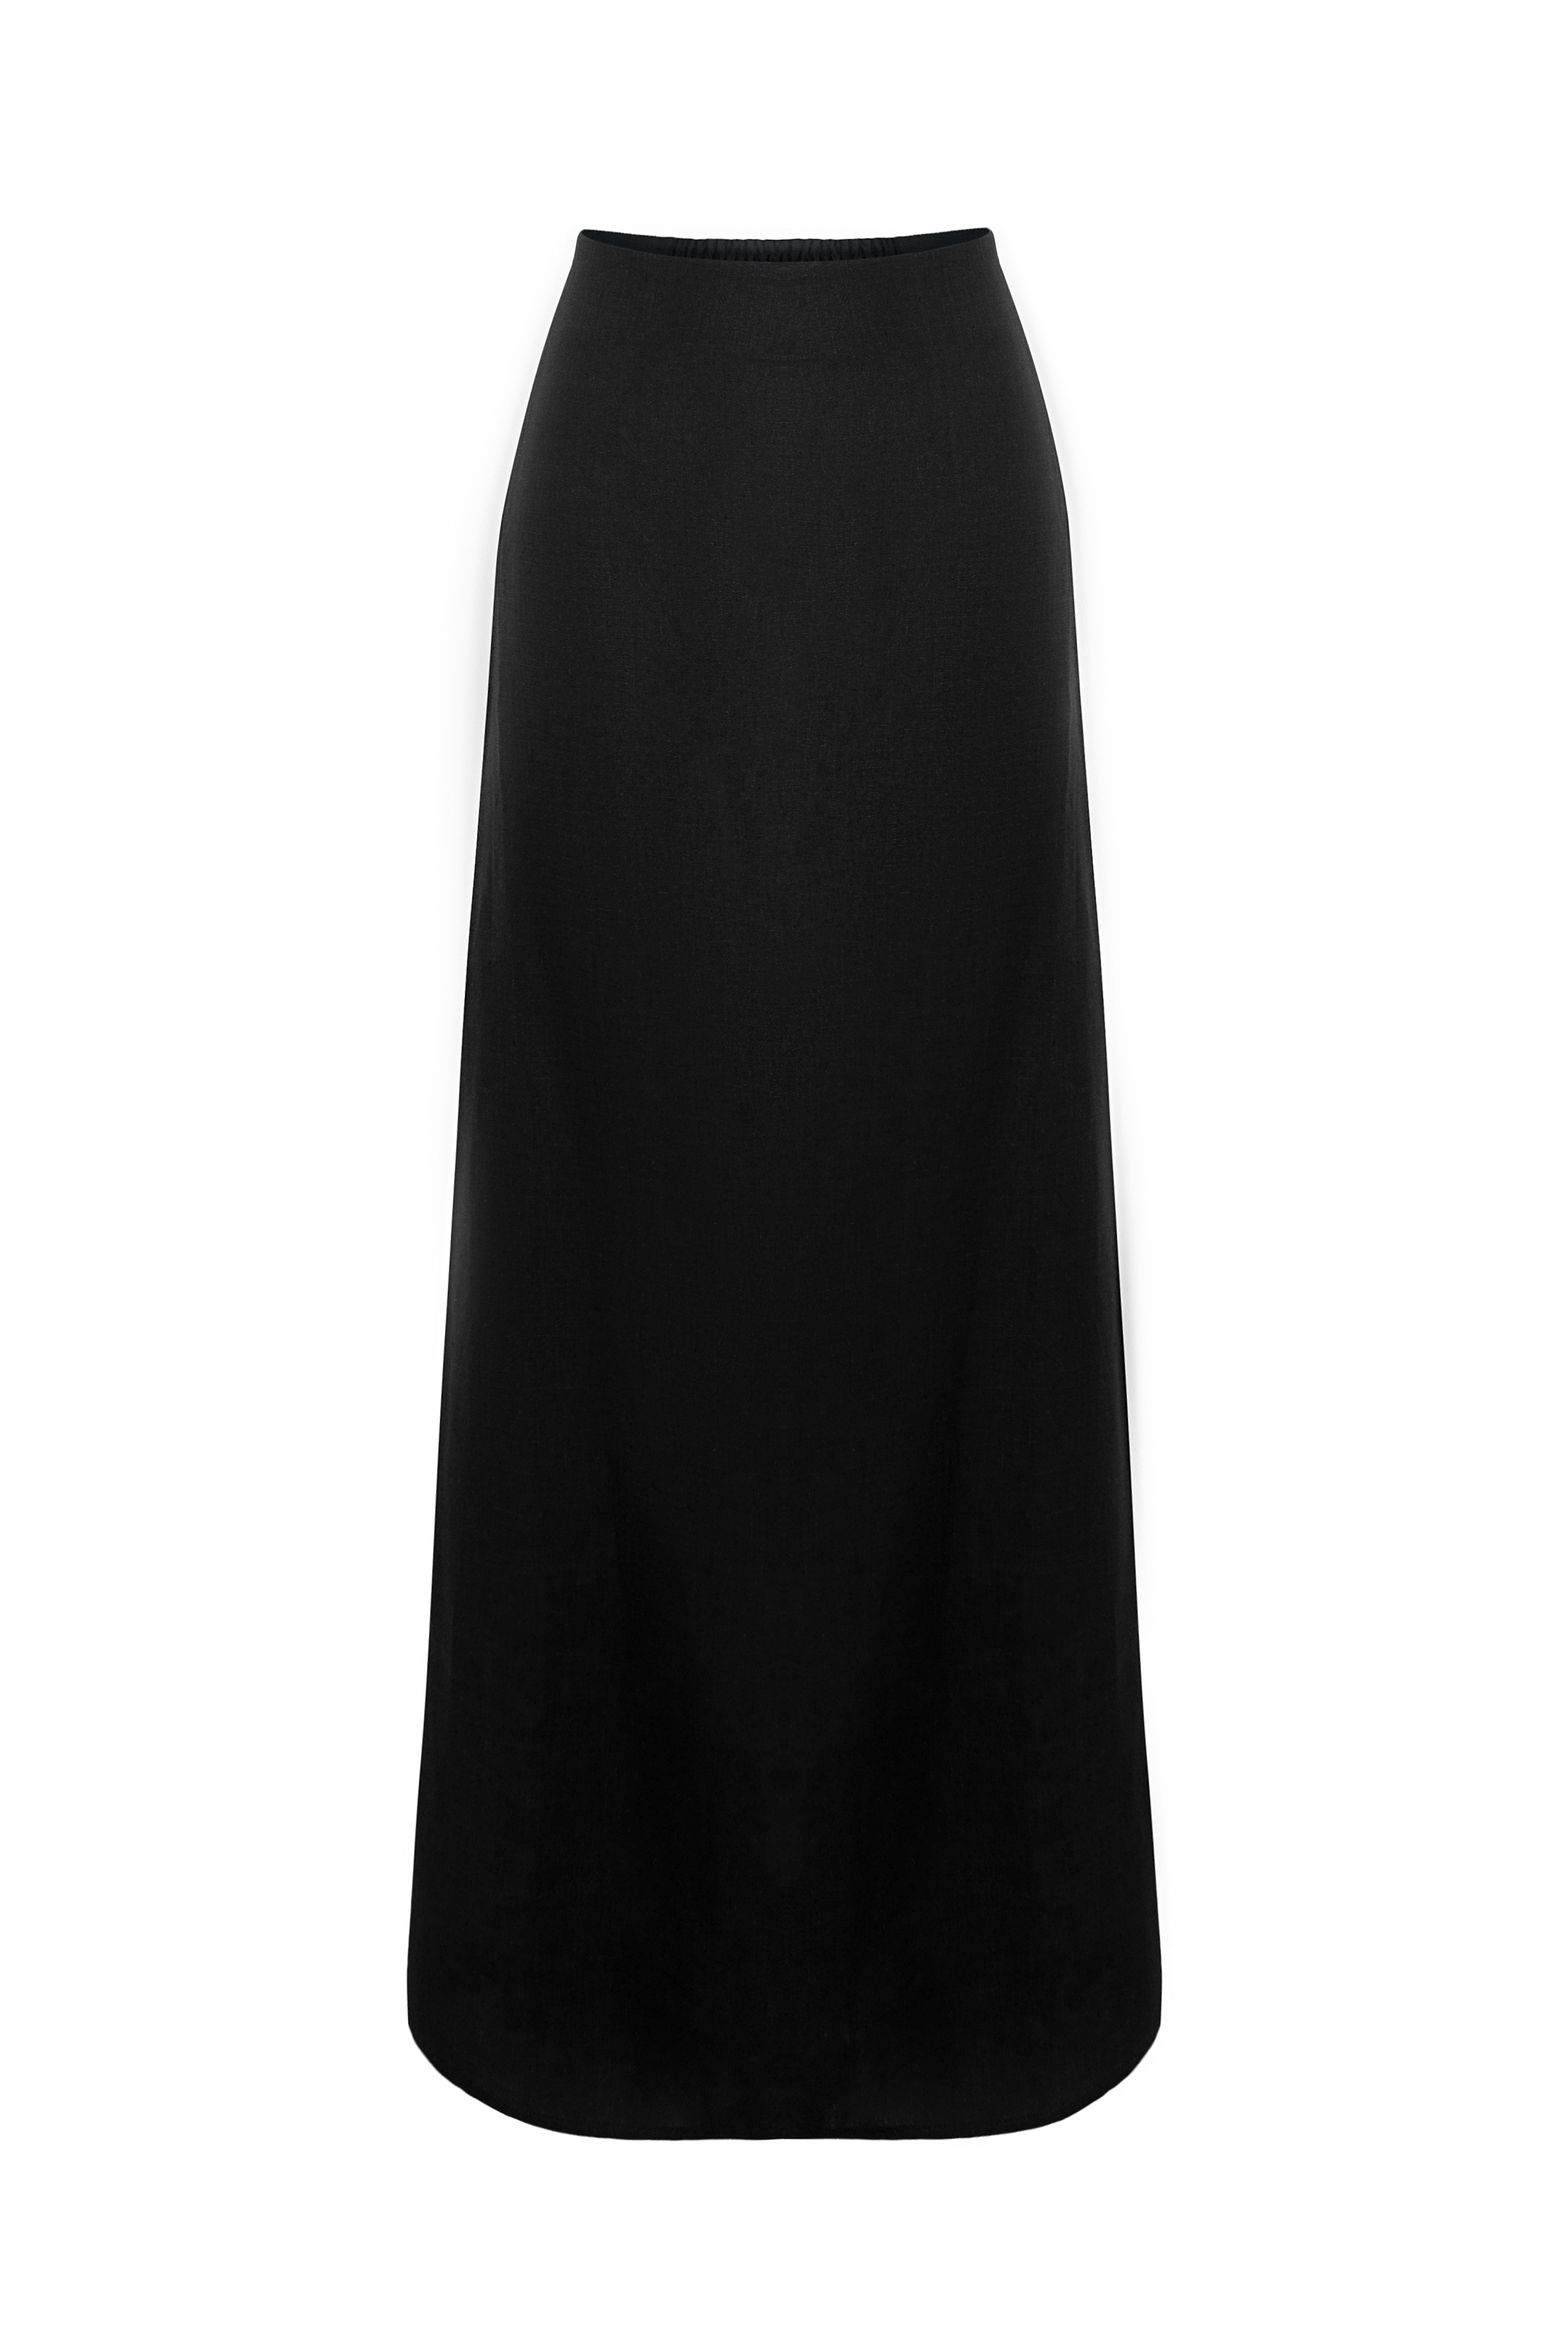 Skirt 4700-01 Black from BRUSNiKA